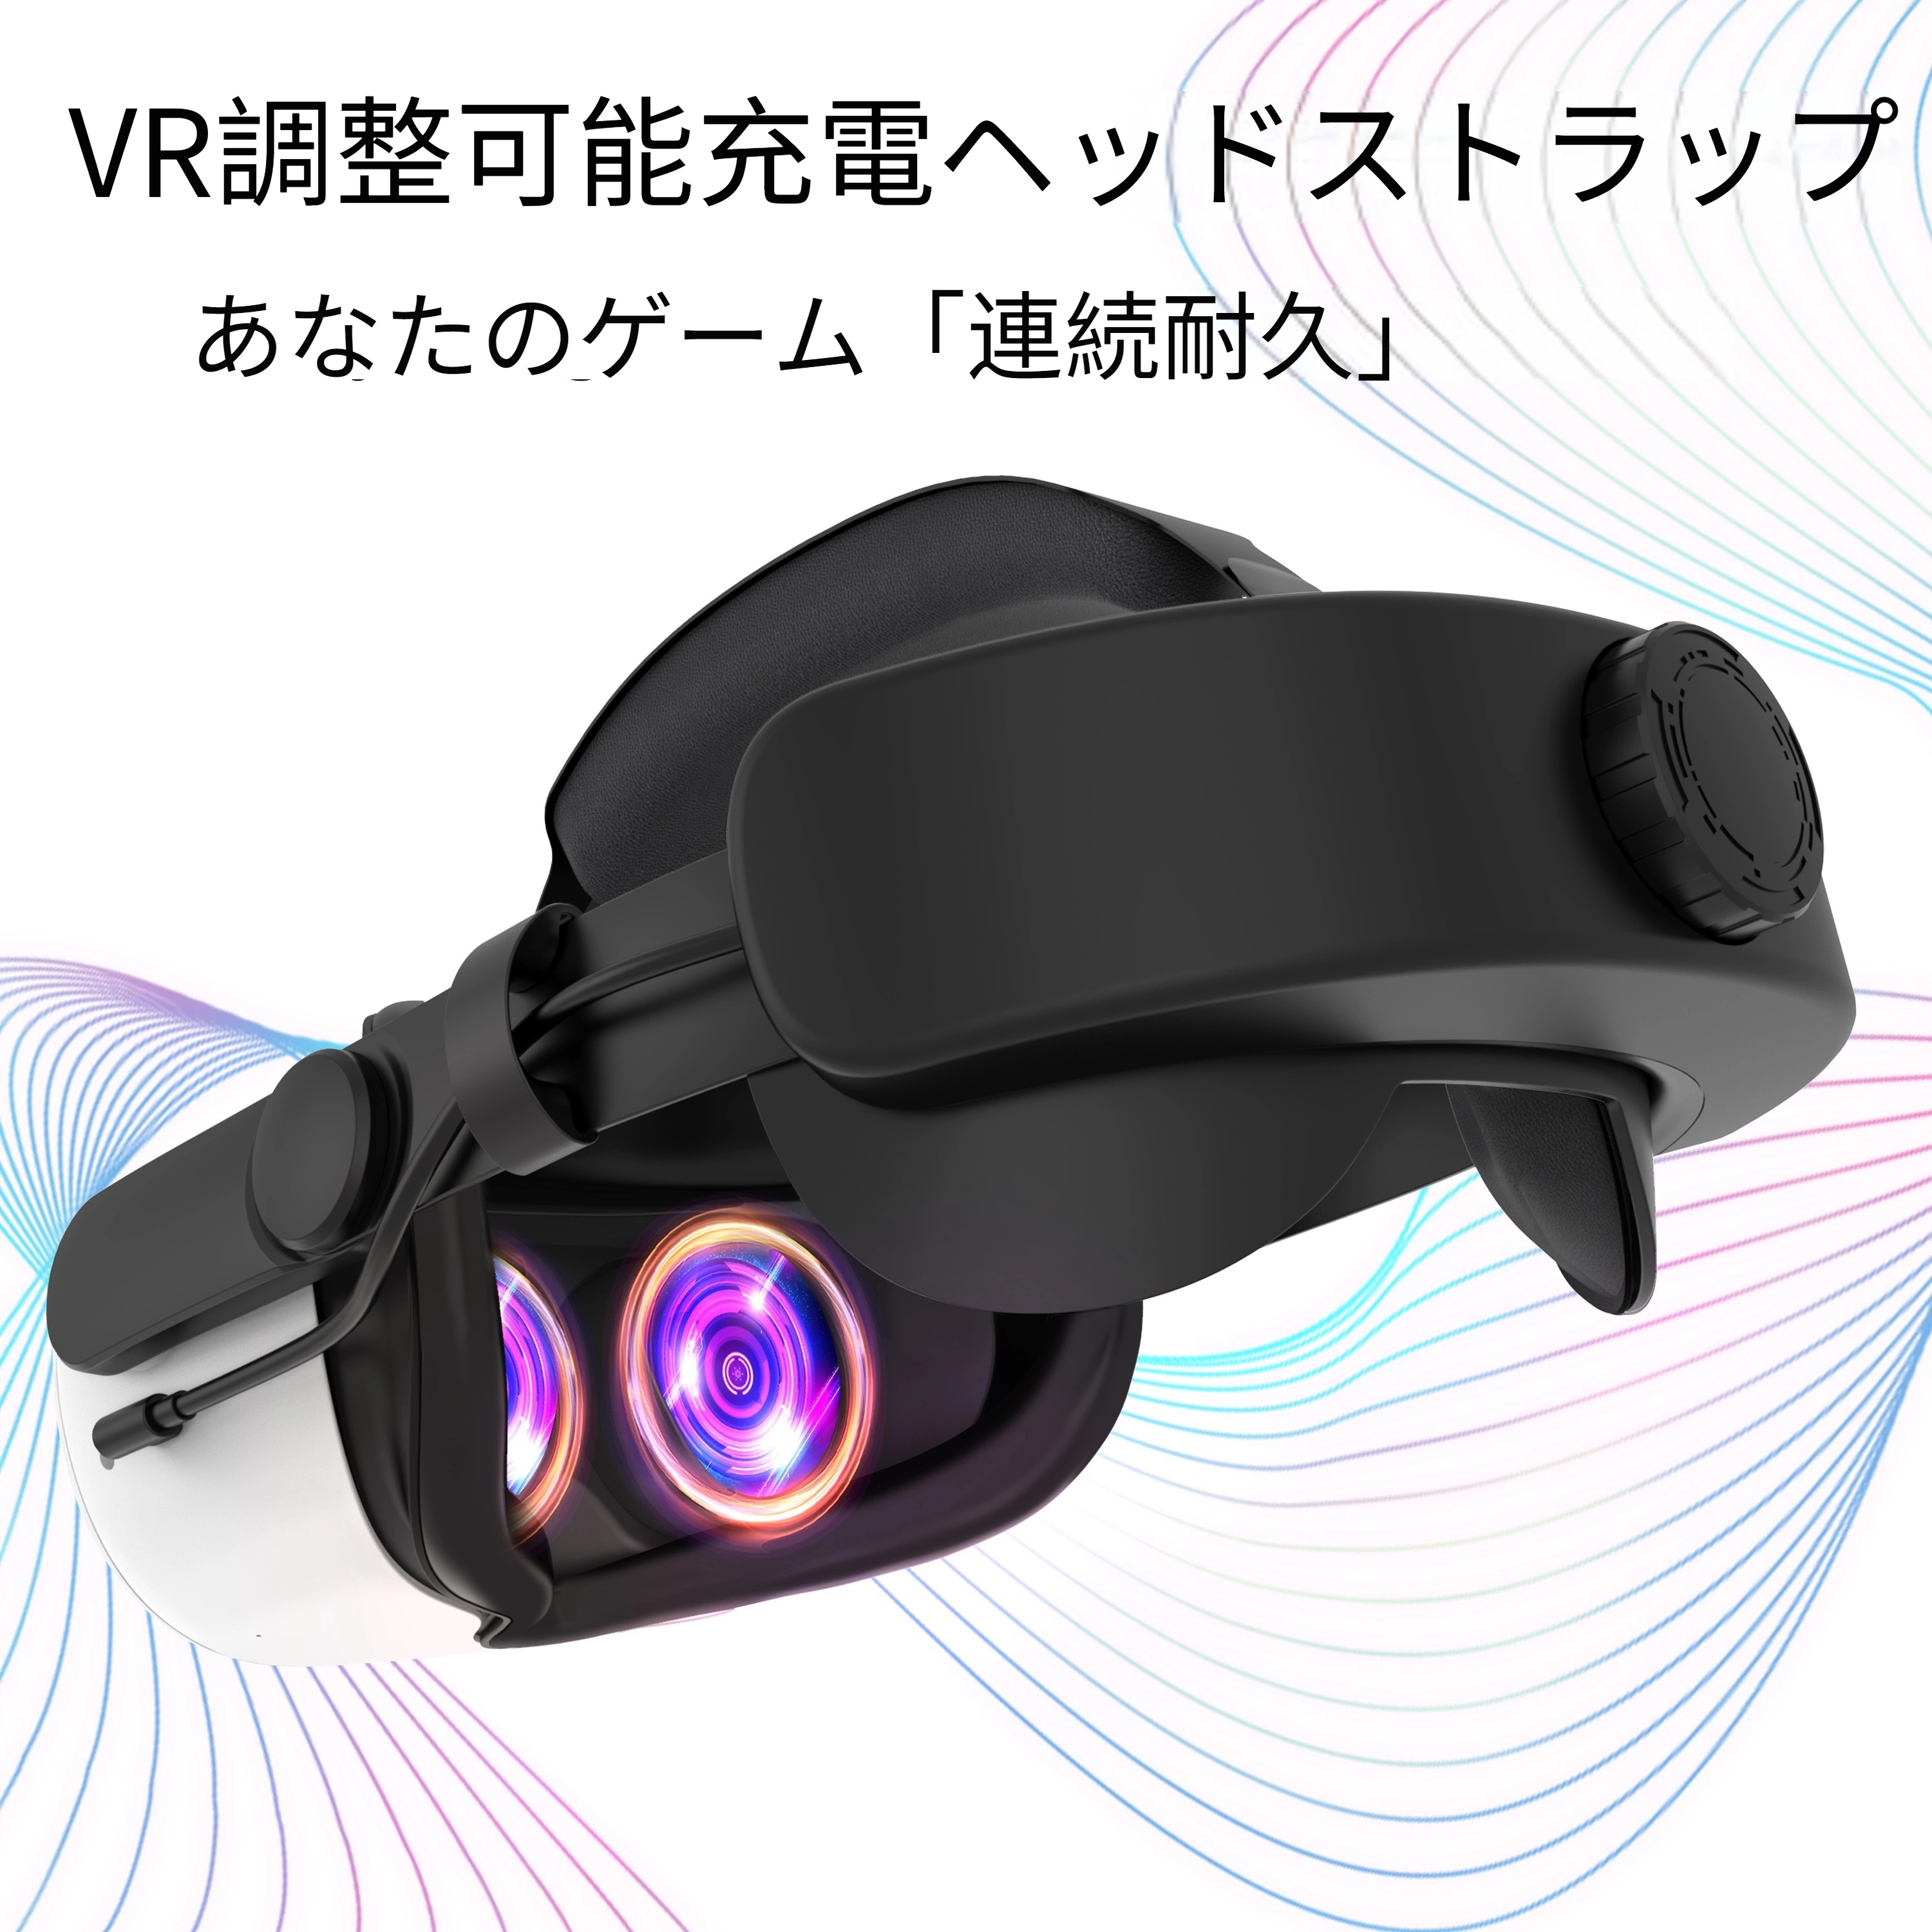 【買い得】VR用ヘッドストラップで快適性を向上 その他